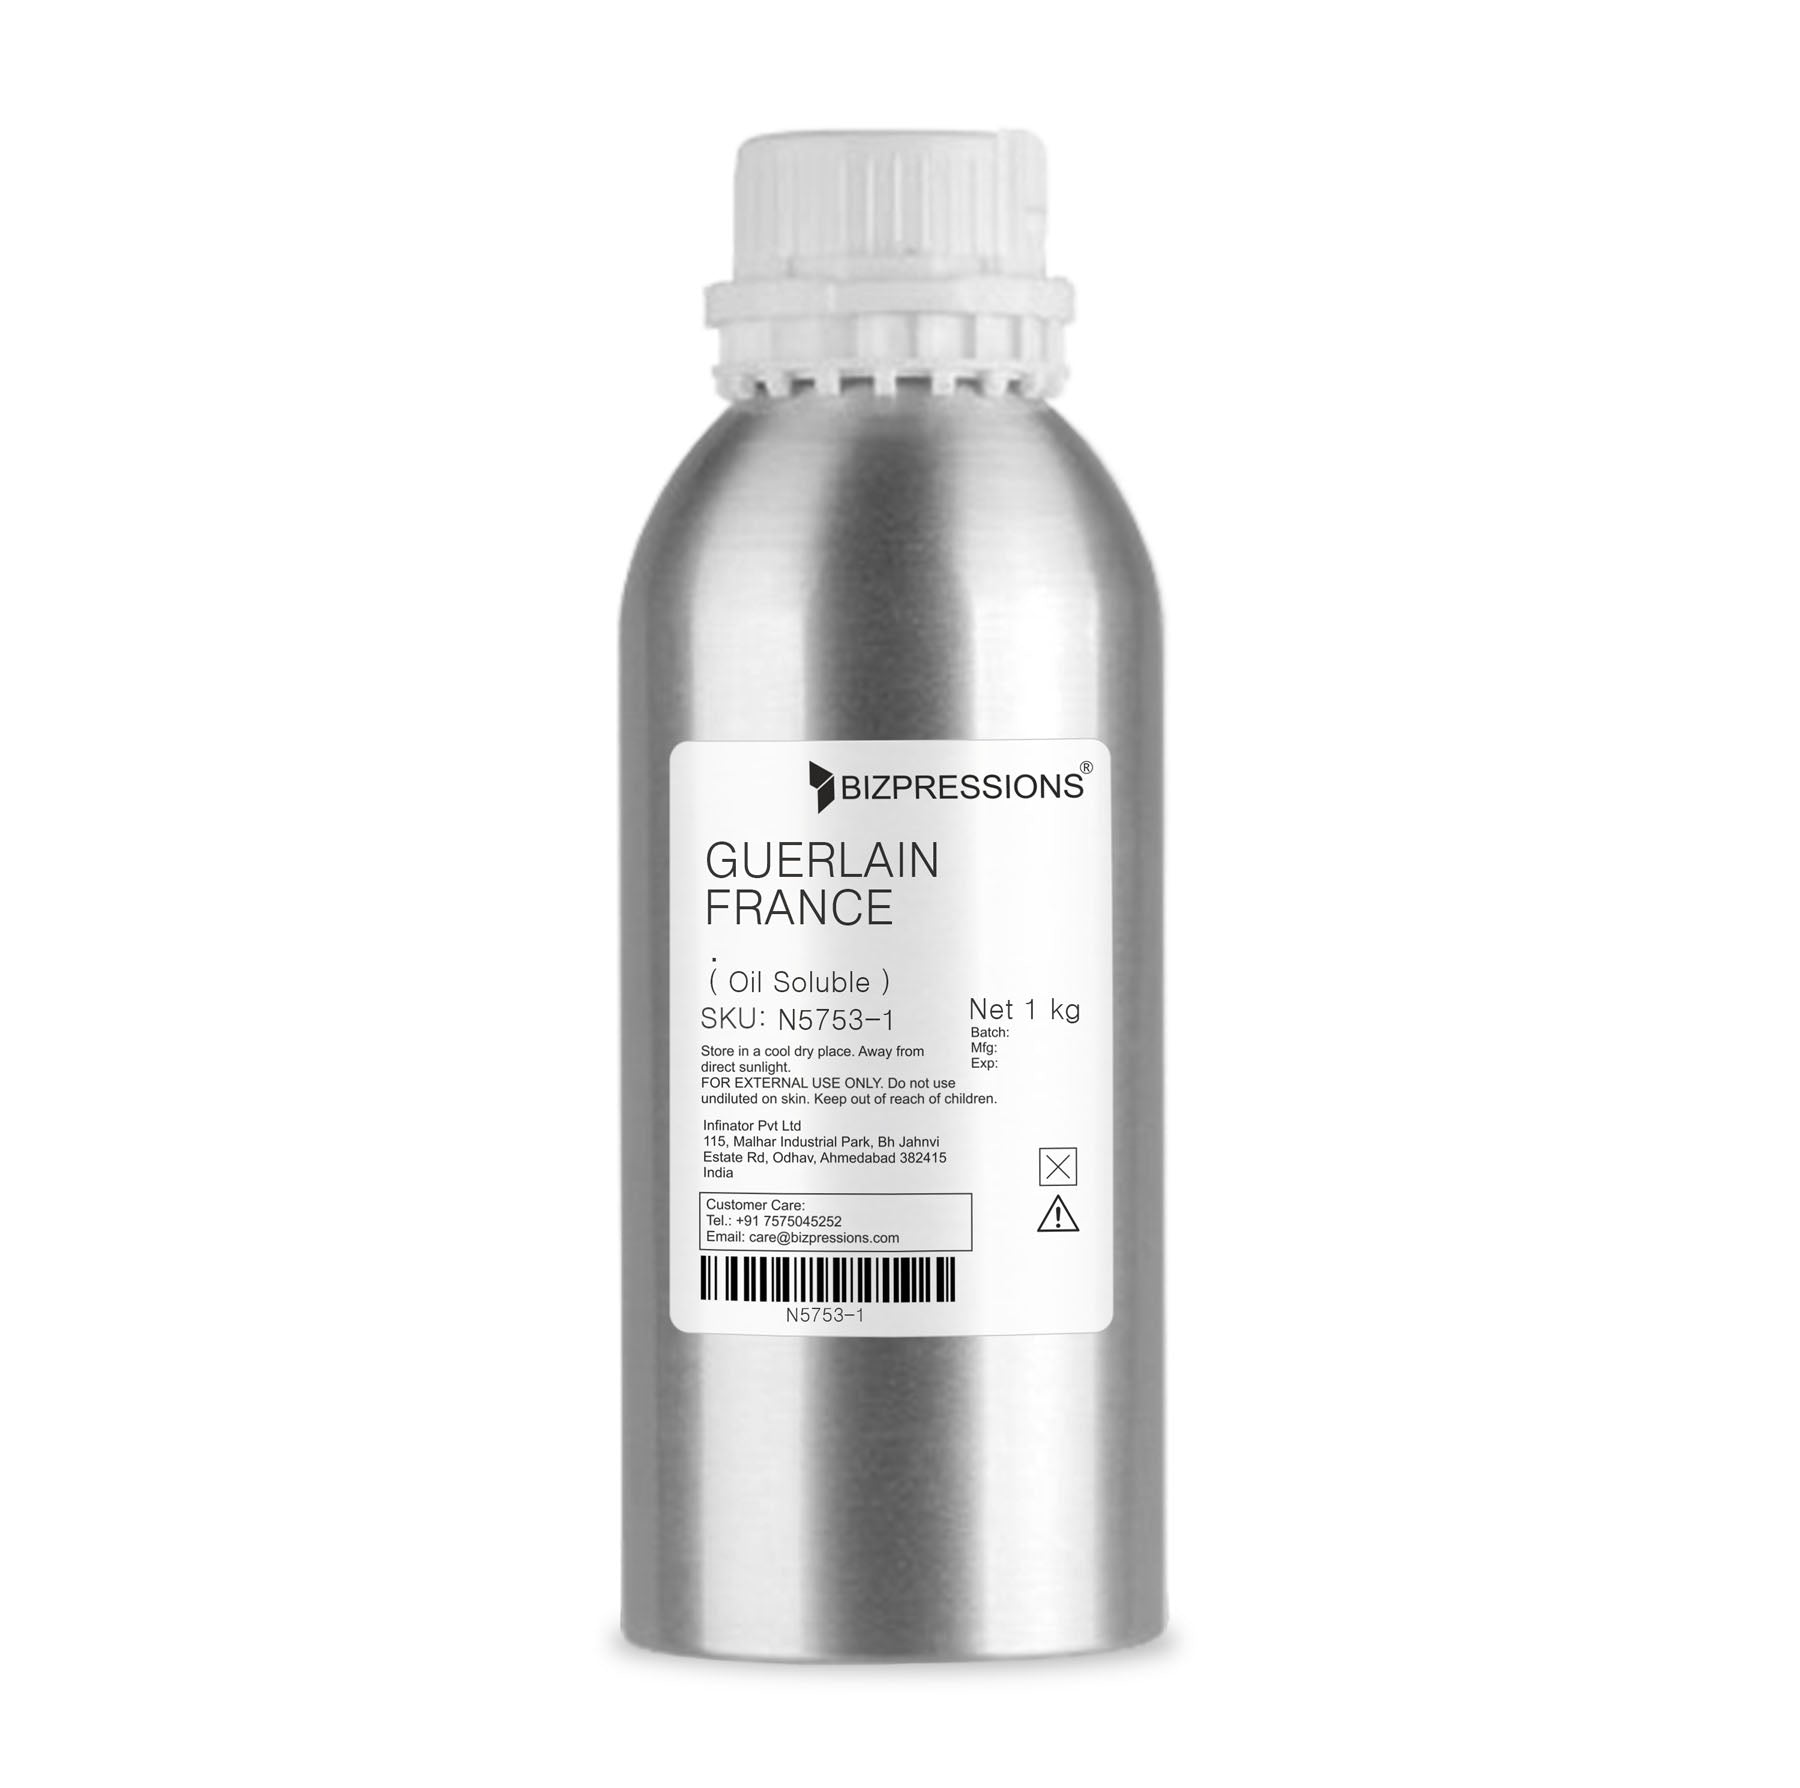 GUERLAIN FRANCE - Fragrance ( Oil Soluble ) - 1 kg